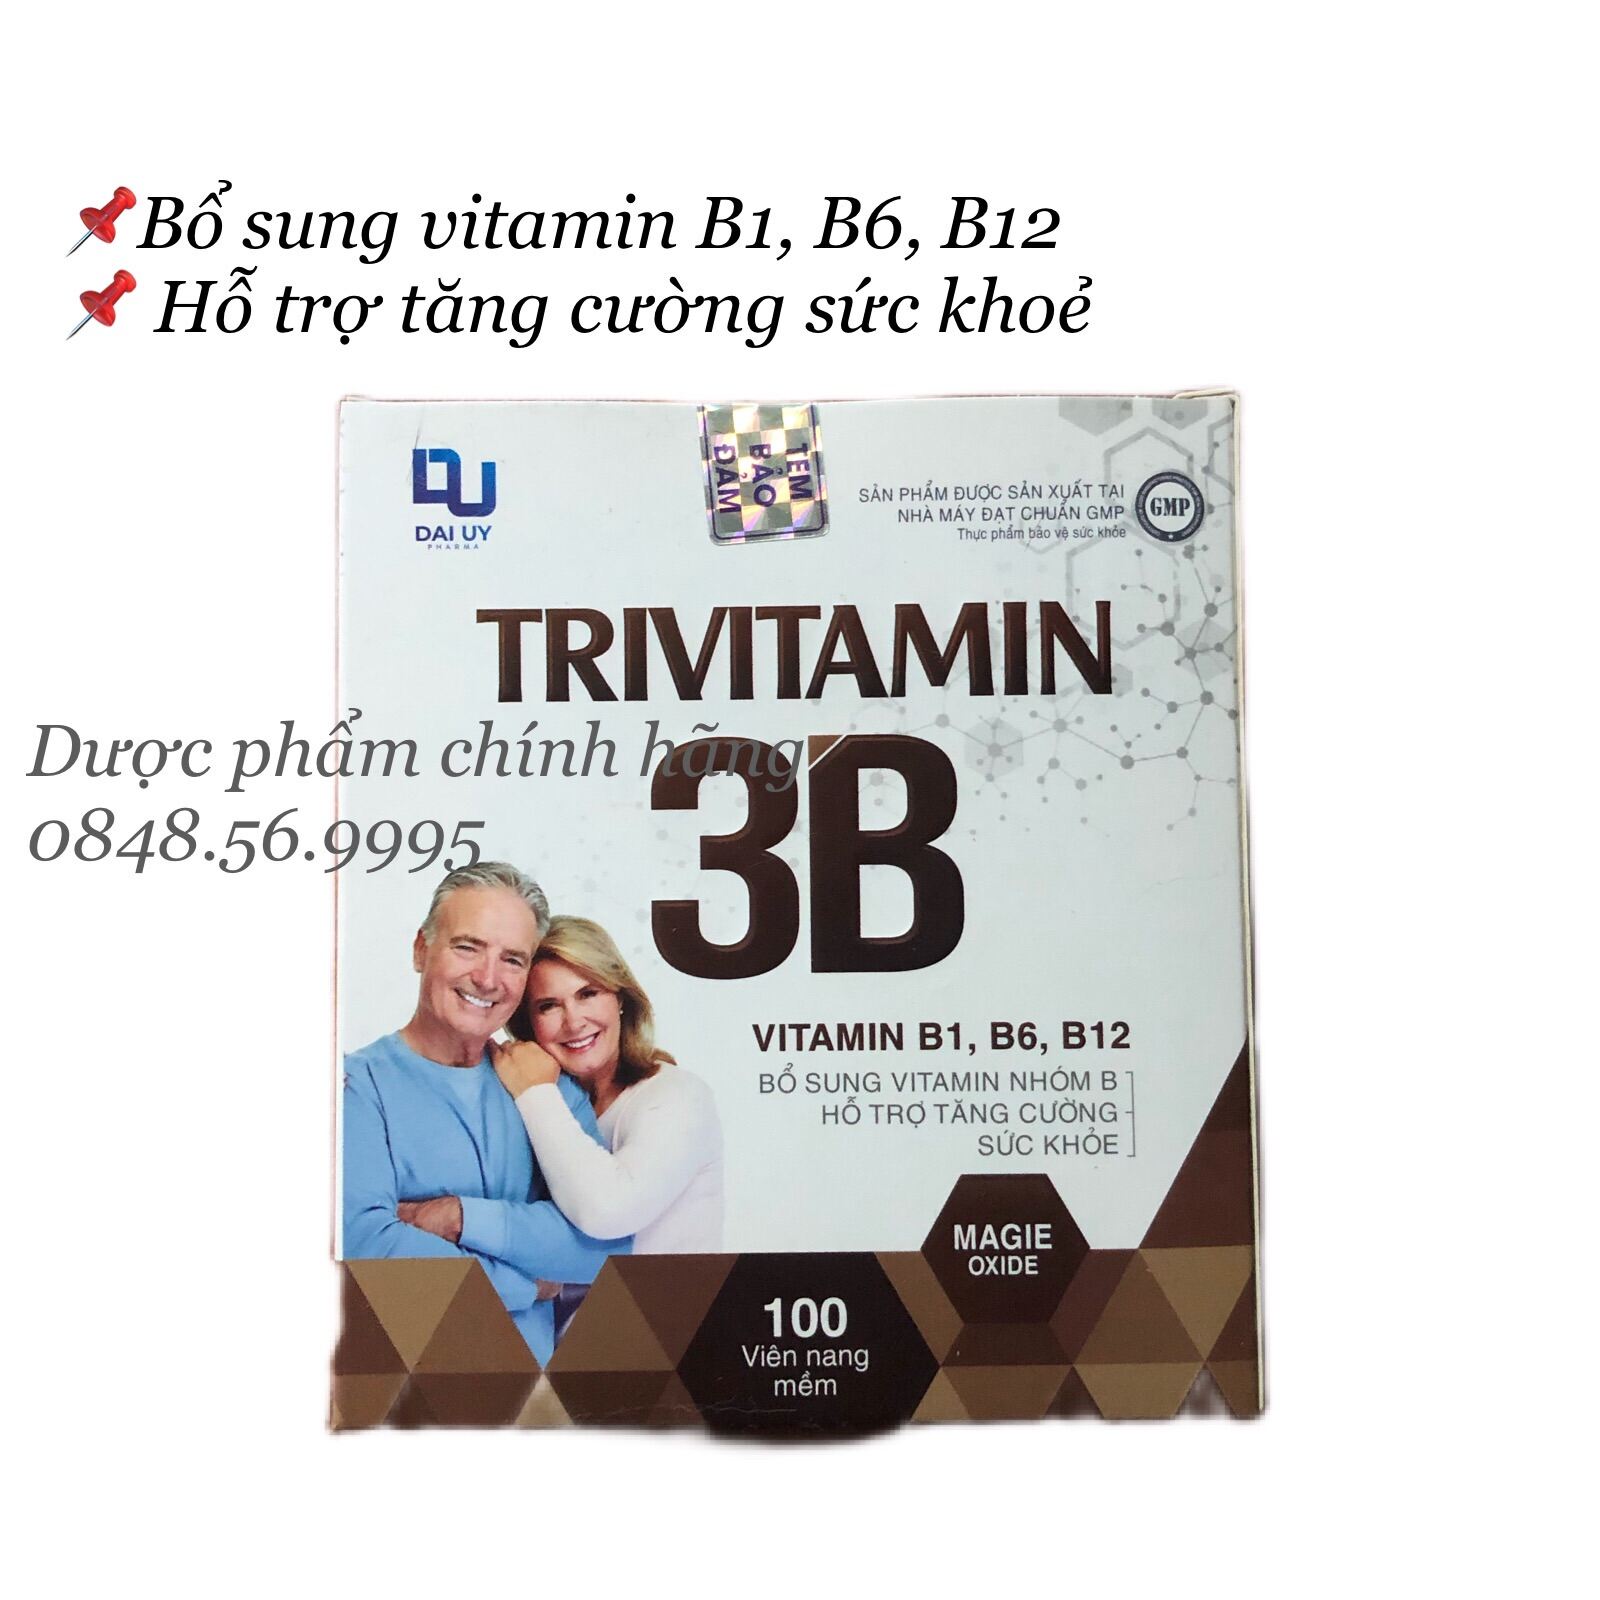 [CHÍNH HÃNG] TRIVITAMIN 3B hộp 100 viên nang mềm - Bổ sung Vitamin nhóm B (B1-B6-B12) hỗ trợ tăng cường sức khỏe.